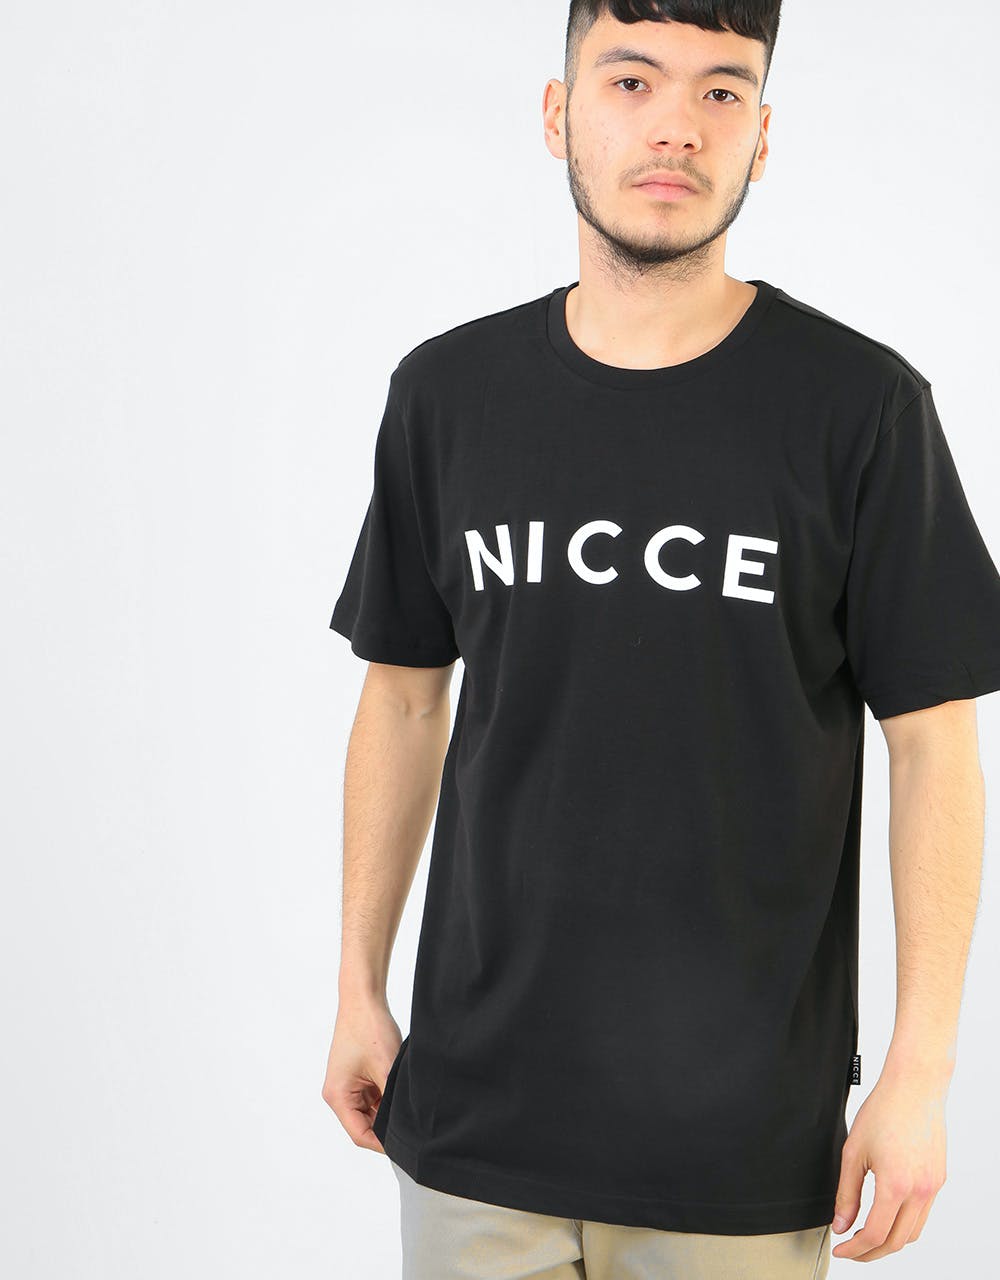 Nicce Original Logo T-Shirt - Black